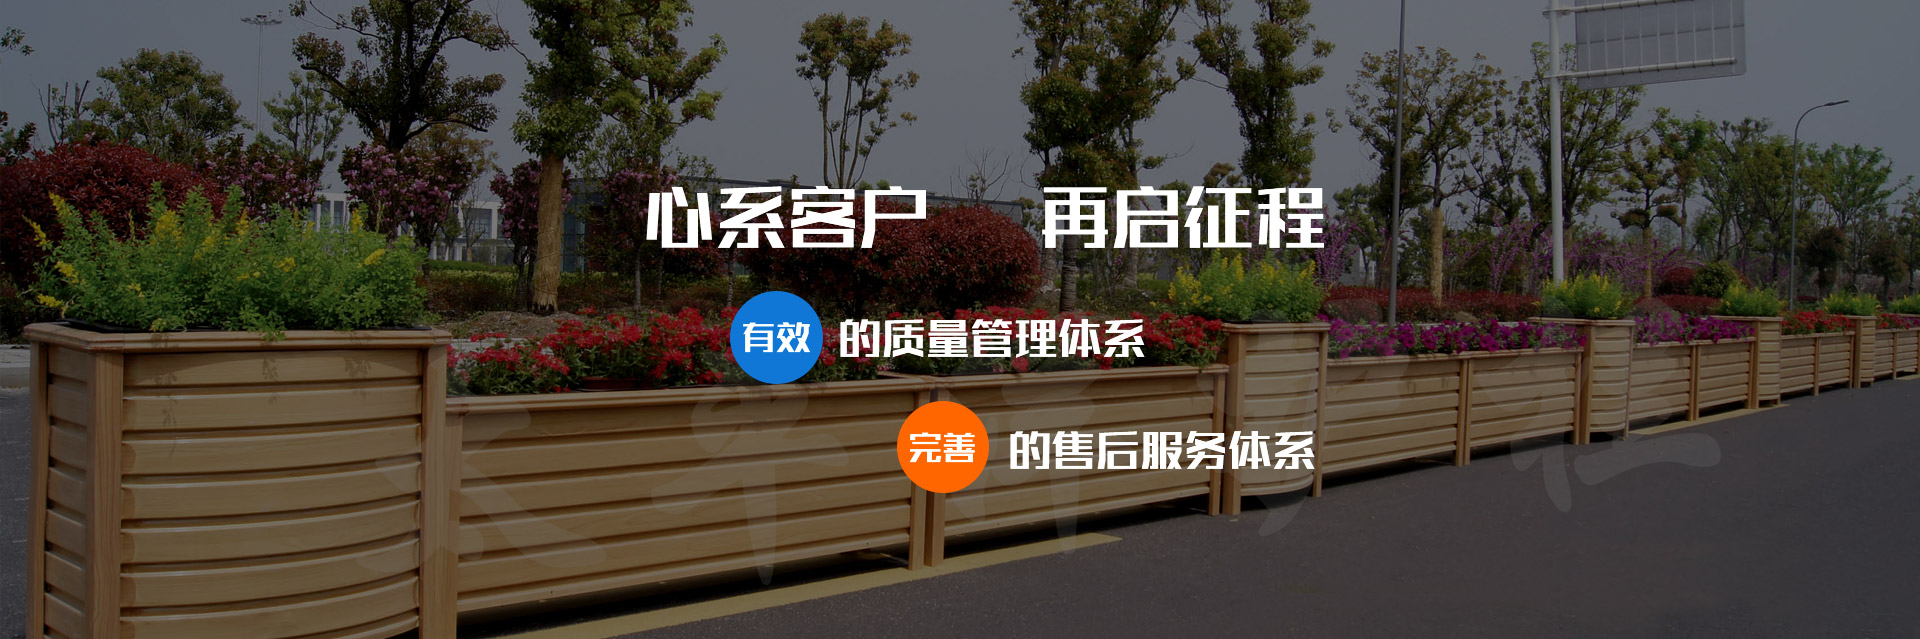 关于当前产品42923.金牛版官网·(中国)官方网站的成功案例等相关图片